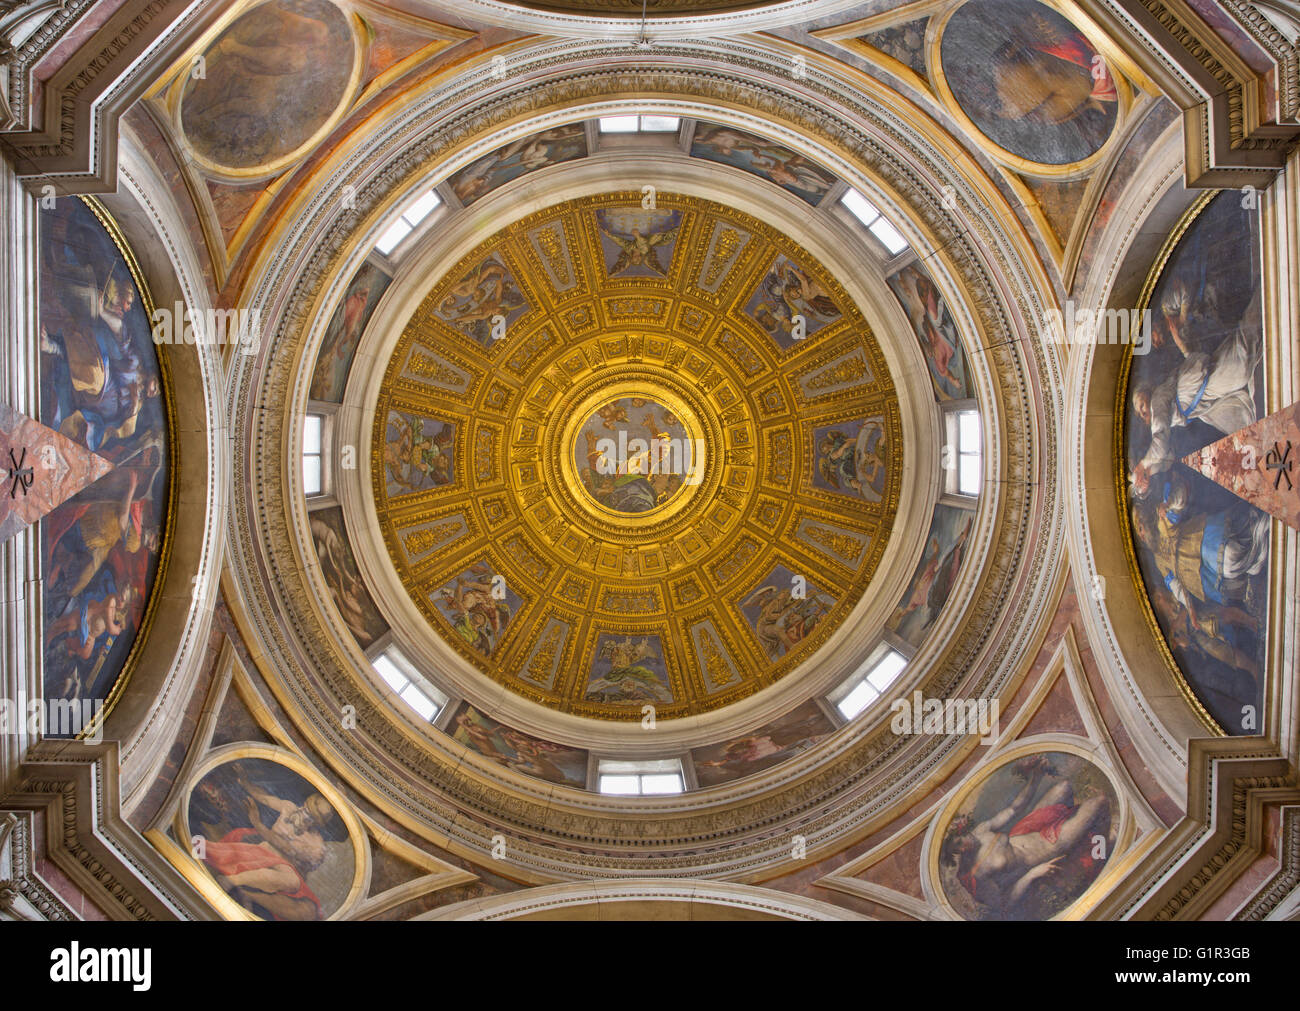 Roma, Italia - 9 Marzo 2016: la cupola nella Cappella Chigi disegnata da Raffaello (1483 - 1520) Foto Stock